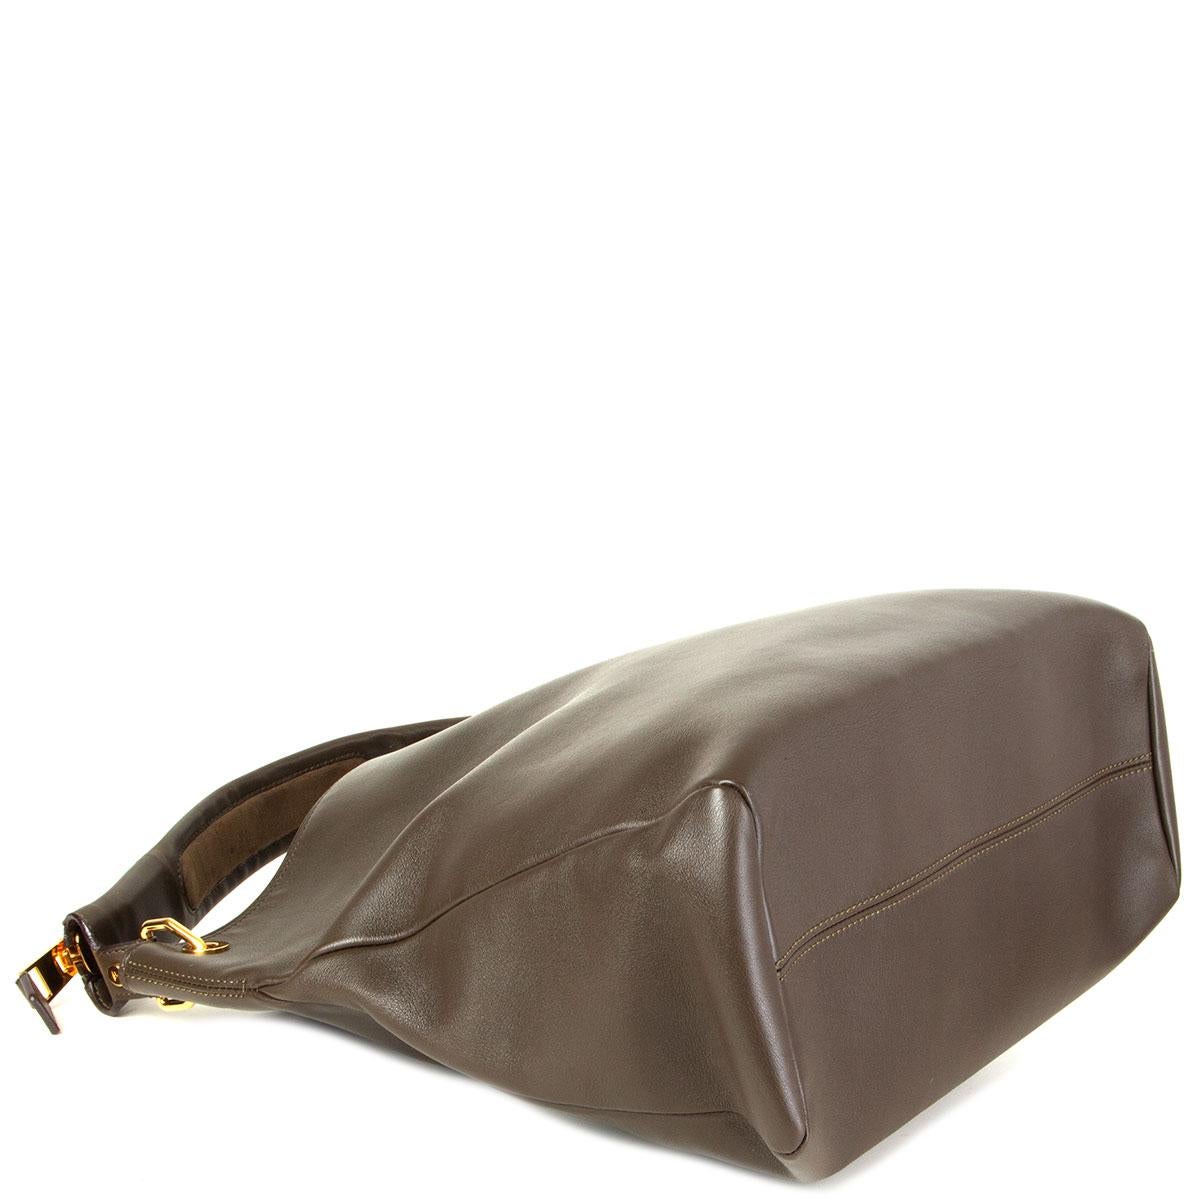 olive green leather handbag